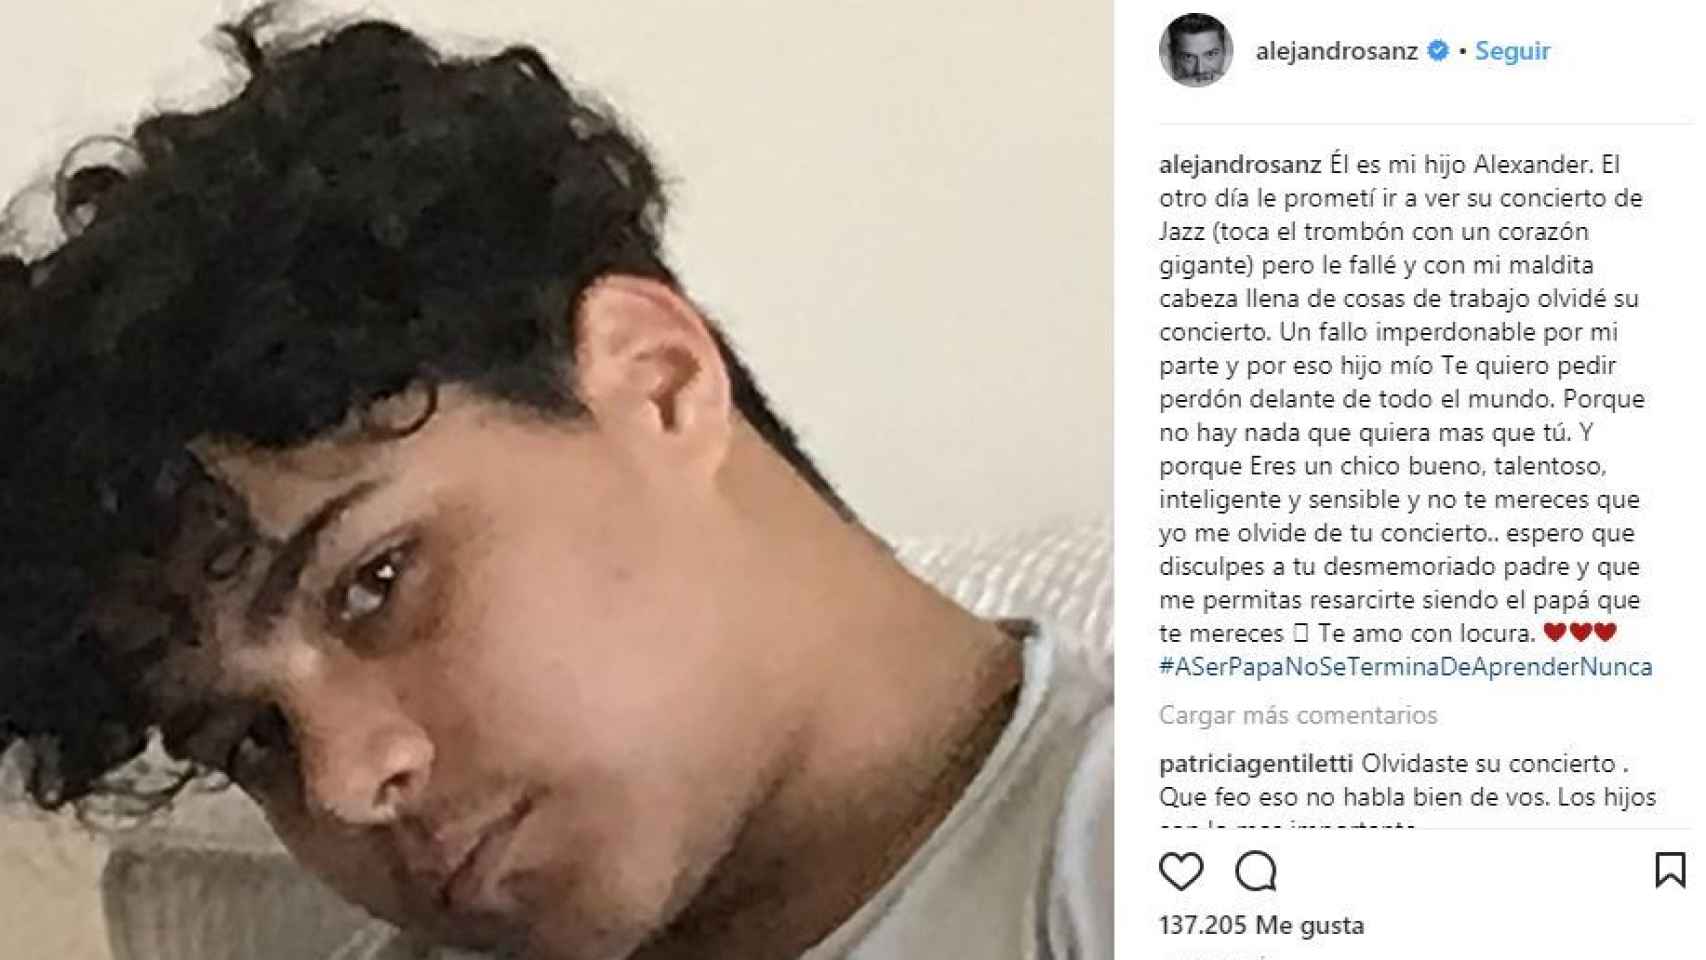 Captura de la publicación de Instagram de Alejandro Sanz.